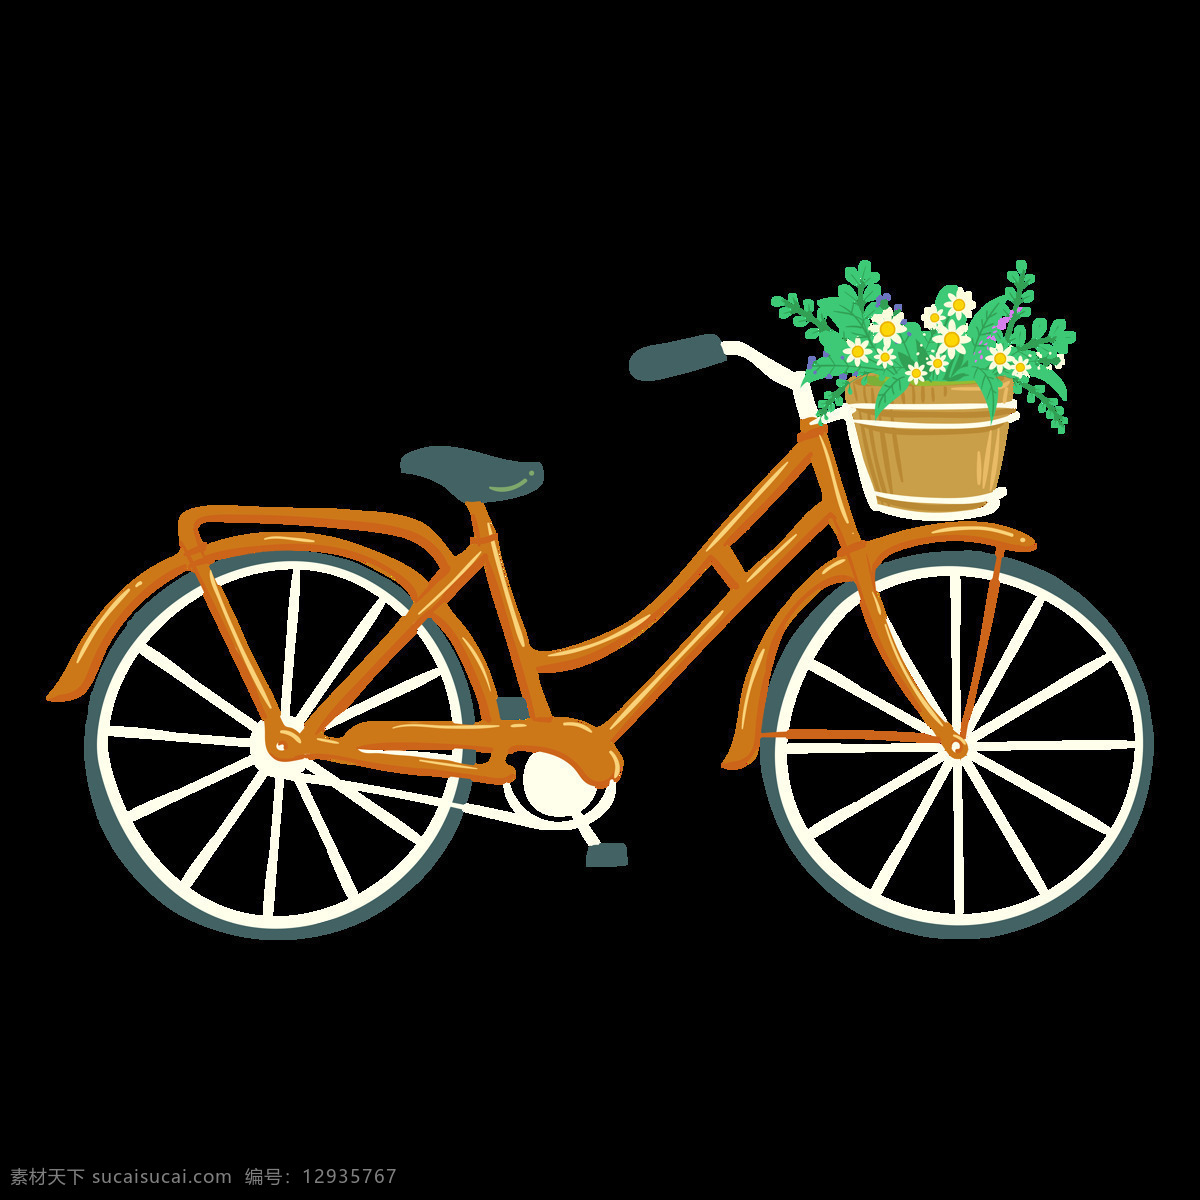 卡通自行车 自行车图片 png透明底 png图片 透明底图片